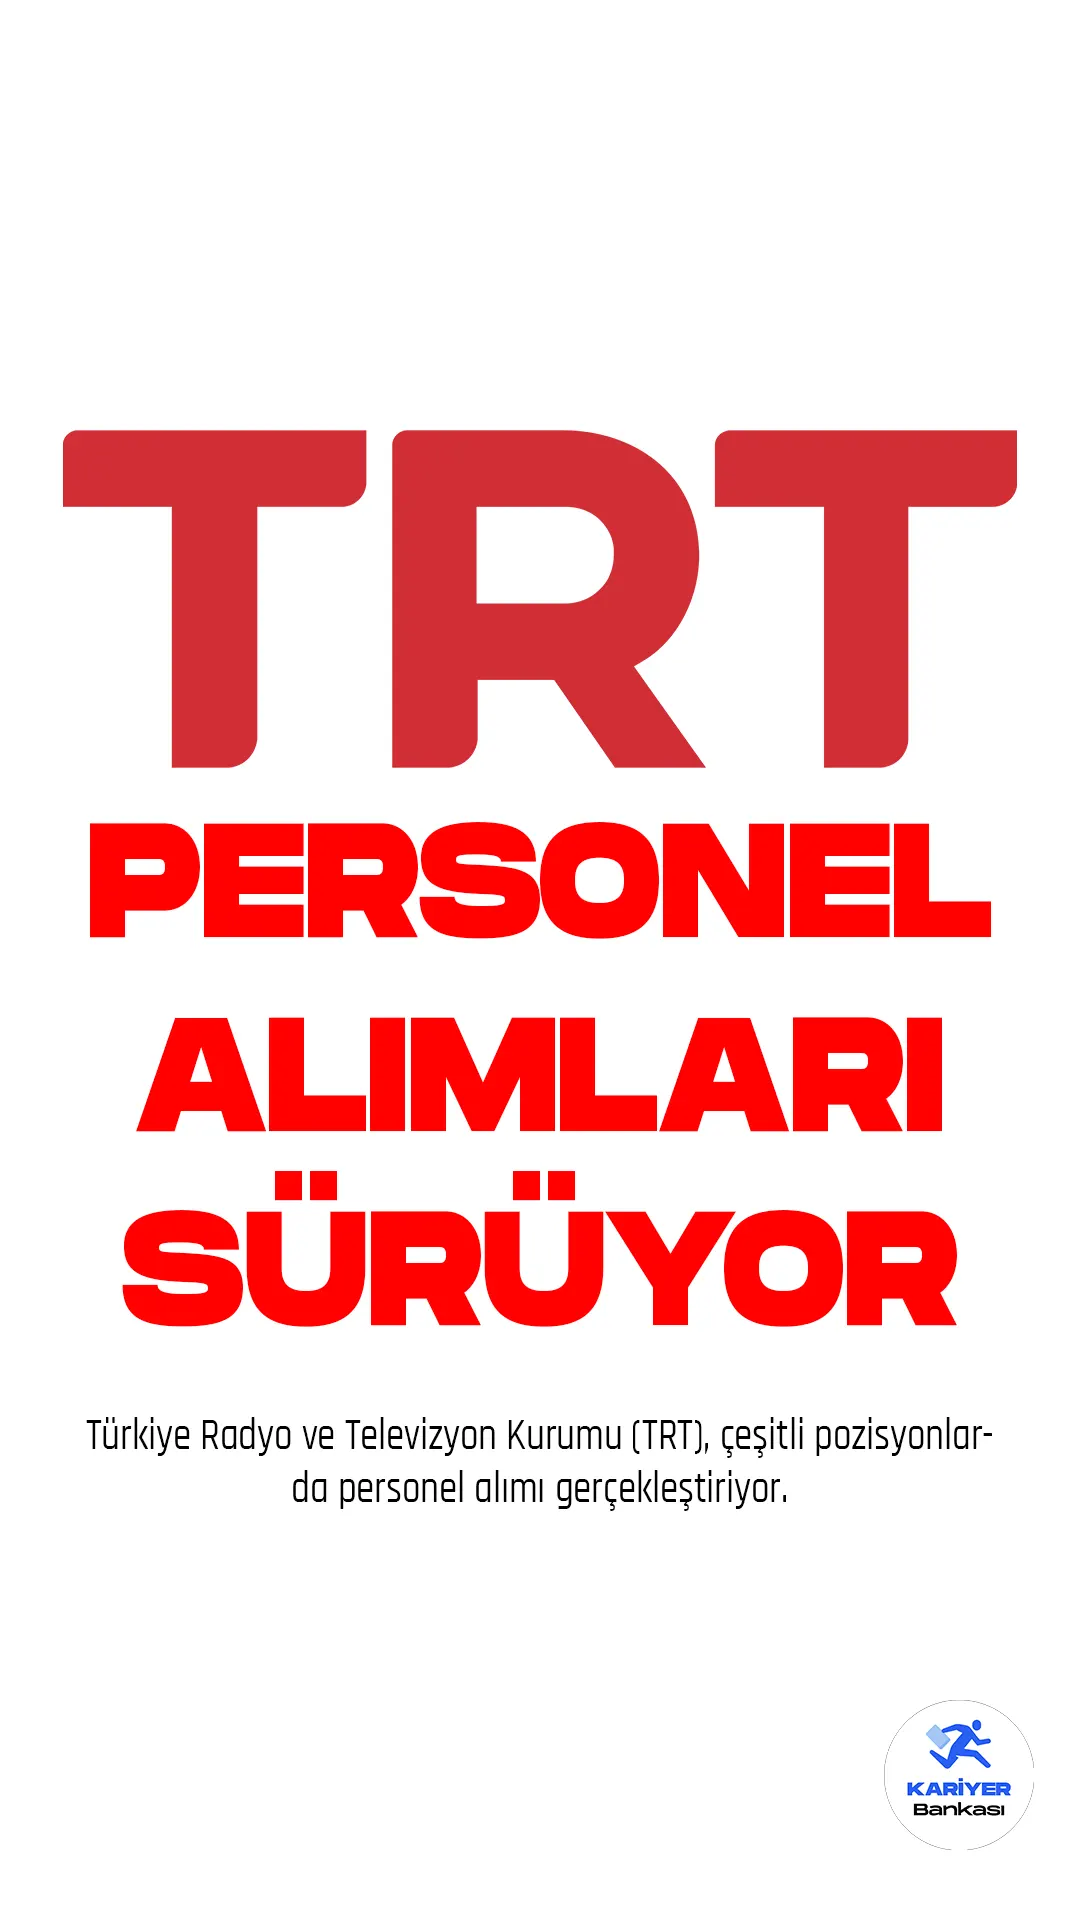 Türkiye Radyo ve Televizyon Kurumu (TRT), çeşitli pozisyonlarda personel alımı gerçekleştiriyor. Son dönemde yayımlanan personel alımı duyuruları arasında, Proje Yöneticisi, Snr. Distribution & Partnerships Manager ve Strategy and Corporate Performance Expert - Senior gibi önemli pozisyonlar yer alıyor.